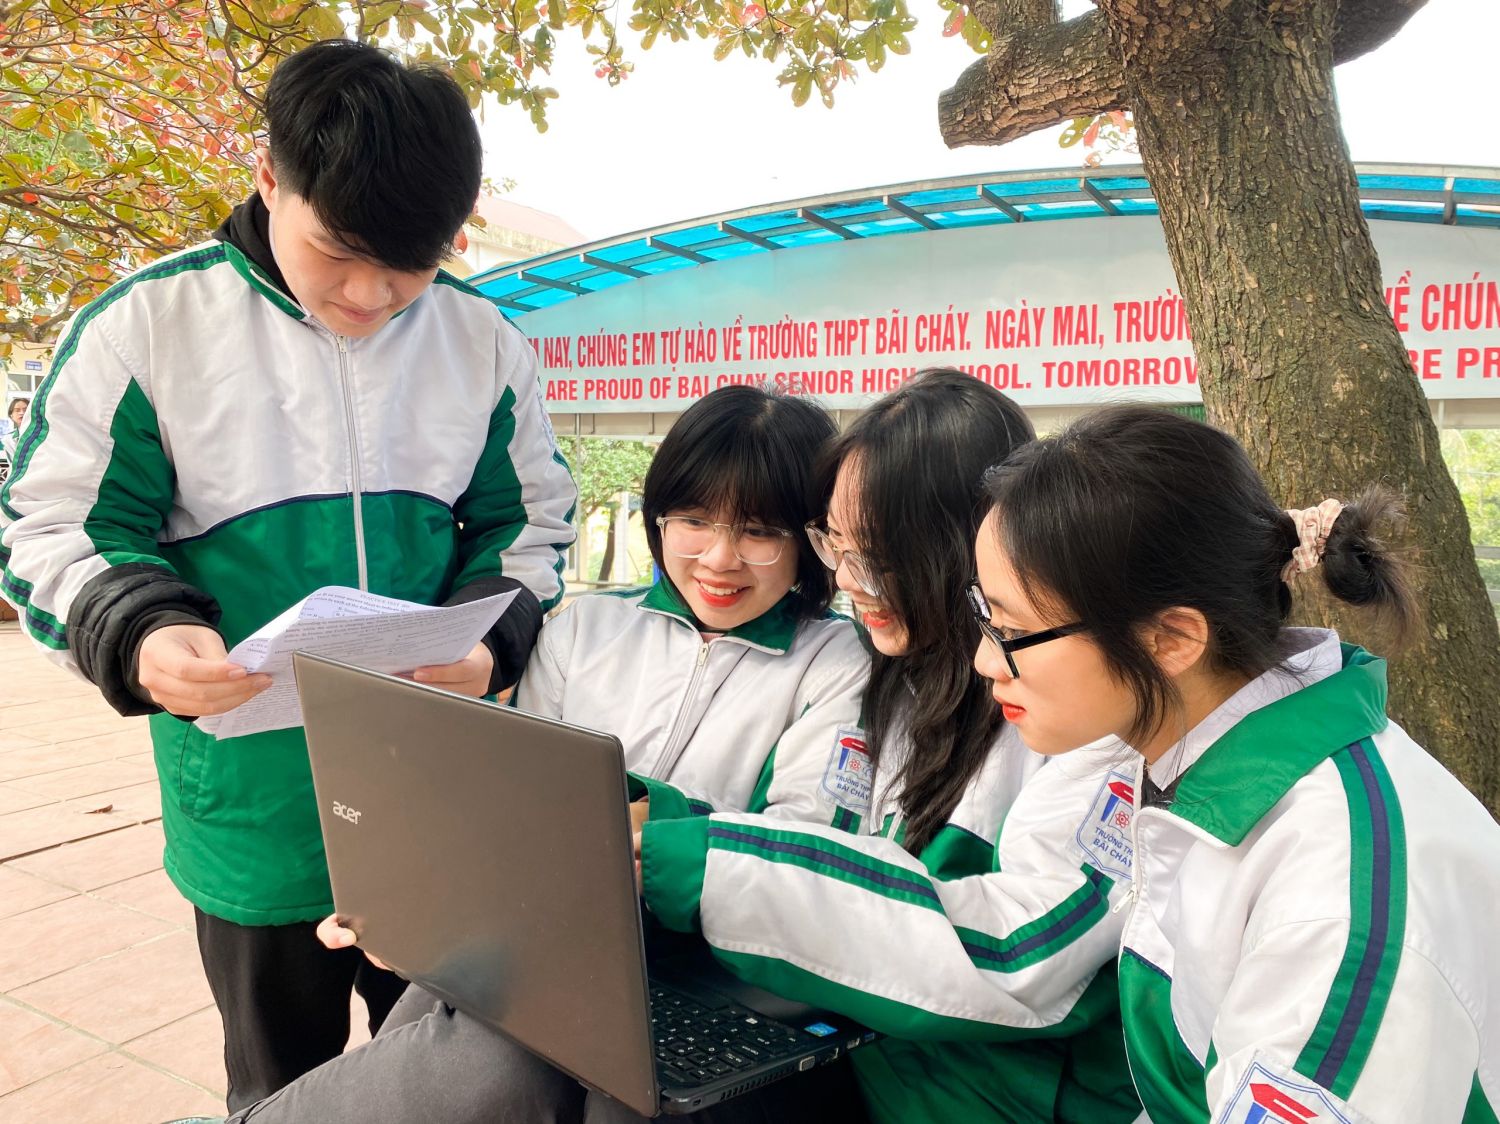 Đặng Thu Thủy, Trường THPT Bãi Cháy (TP Hạ Long) đang lên ý tưởng cùng nhóm bạn của mình về các nội dung liên quan đến cuộc thi 